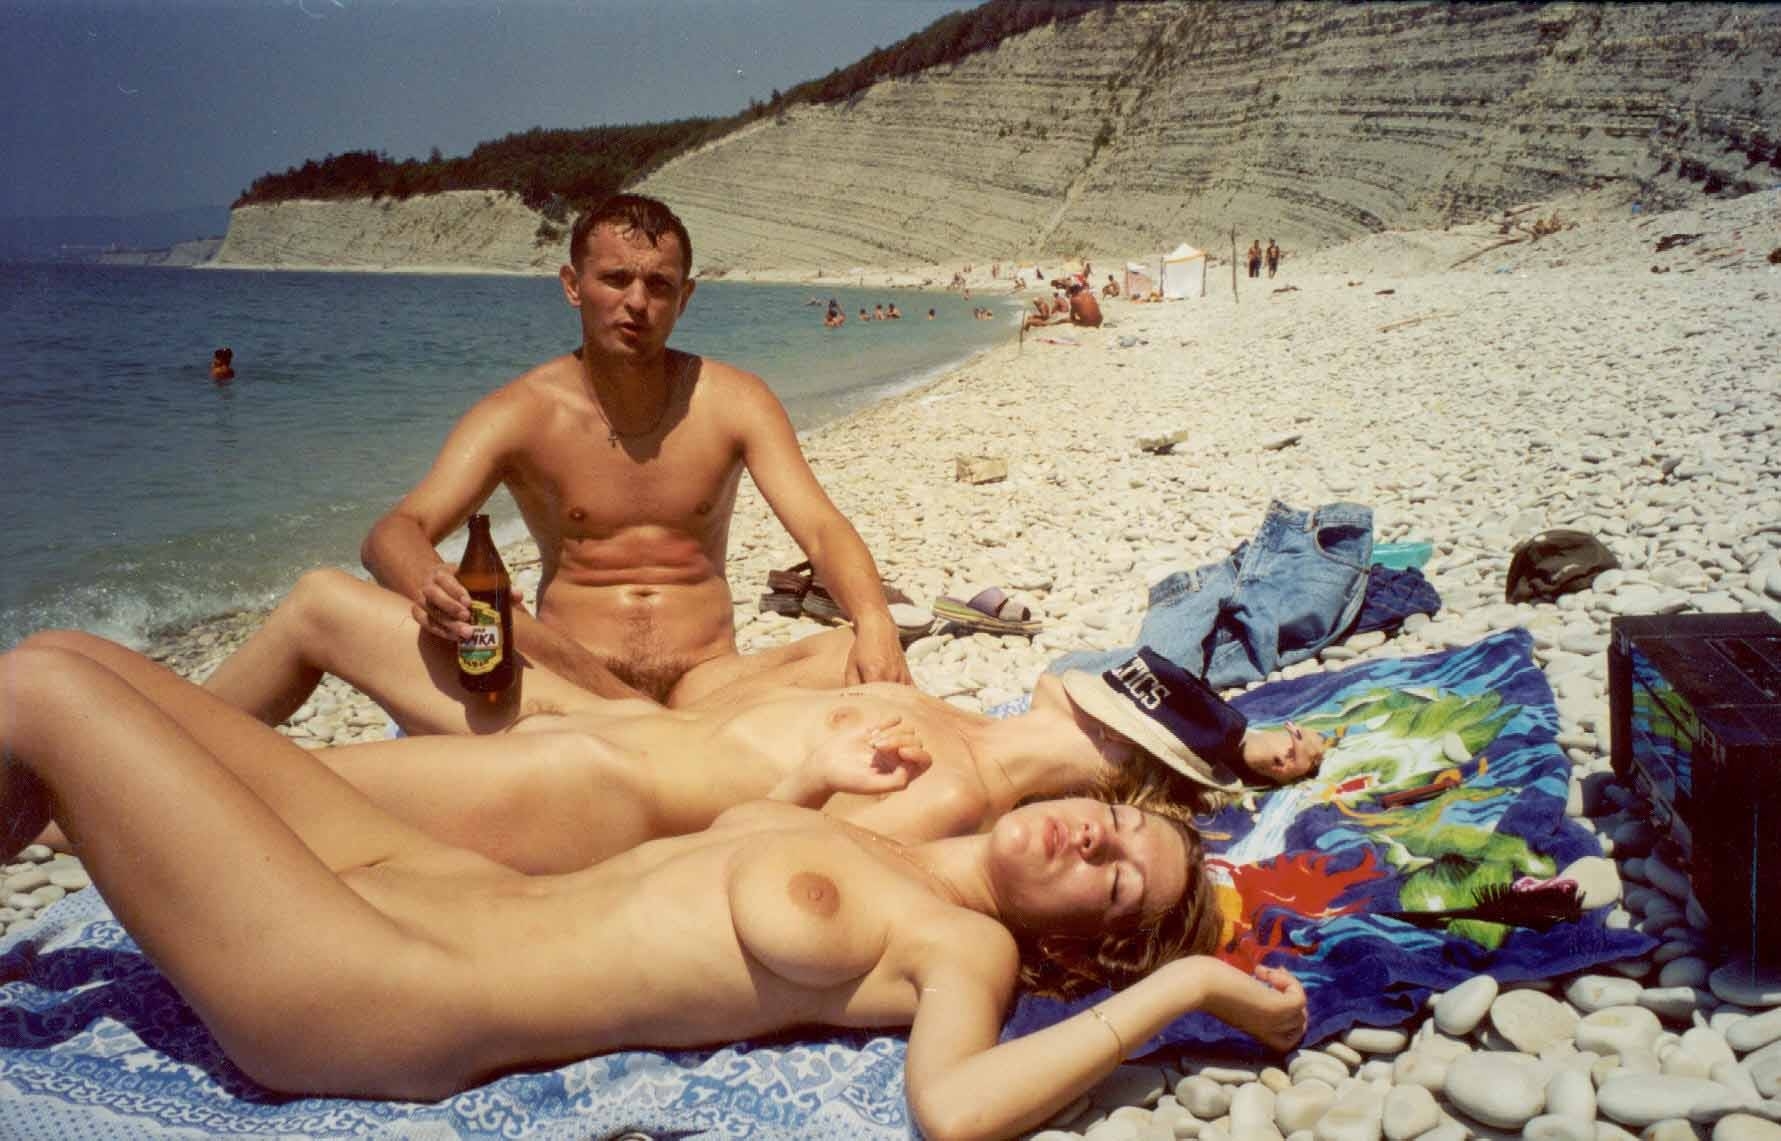 I эротика на нудистском пляже фото 9